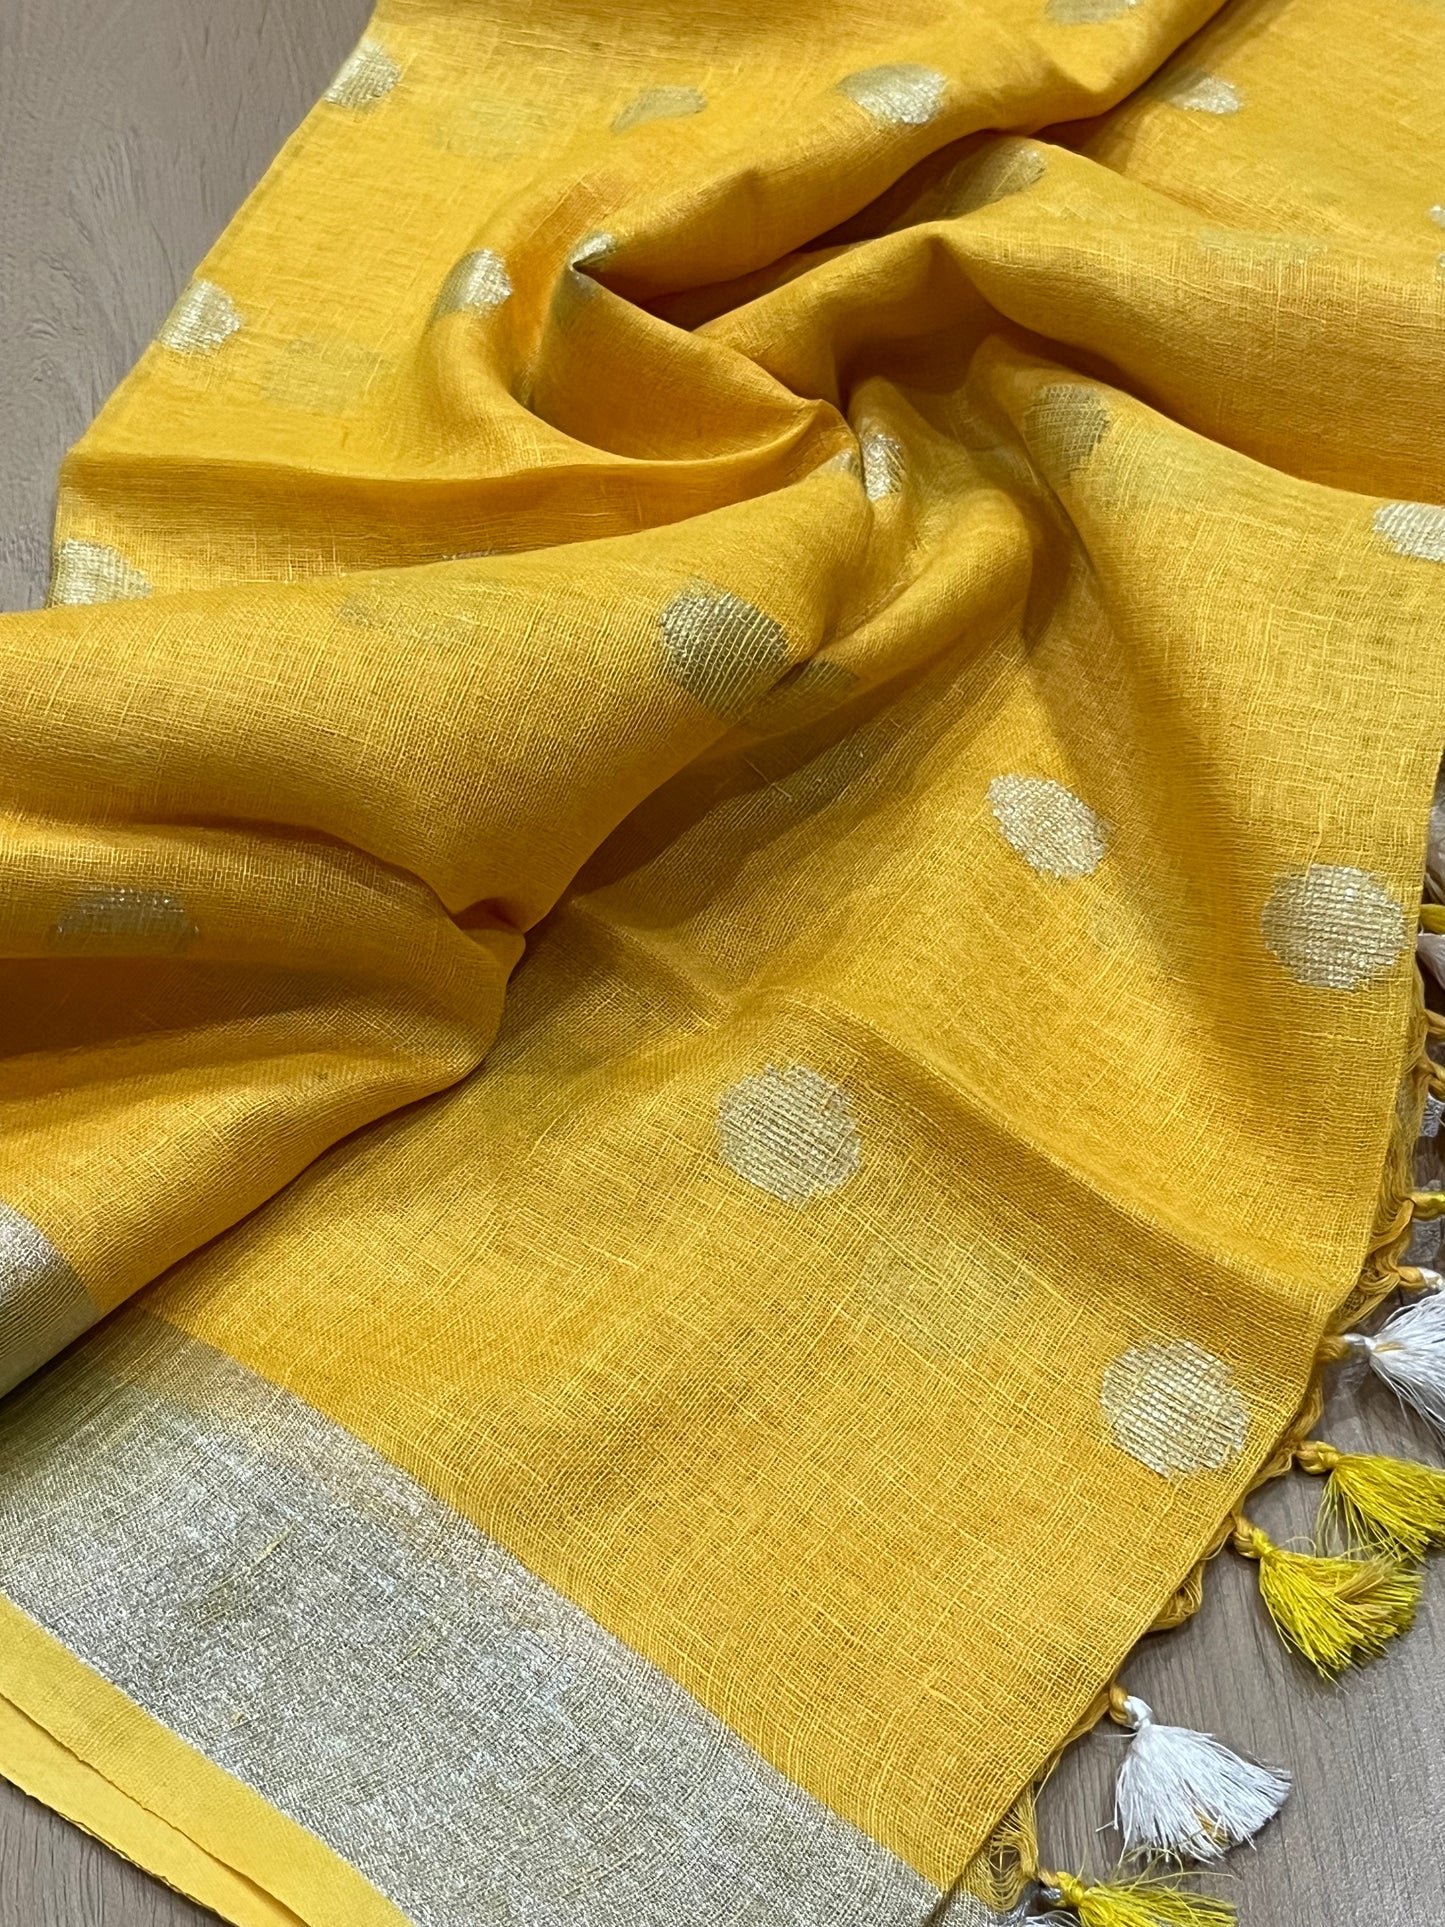 LINEN DUPATTA: Yellow Linen Dupatta with zari motif & silver zari border with Tassels | KIHUMS Dupatta